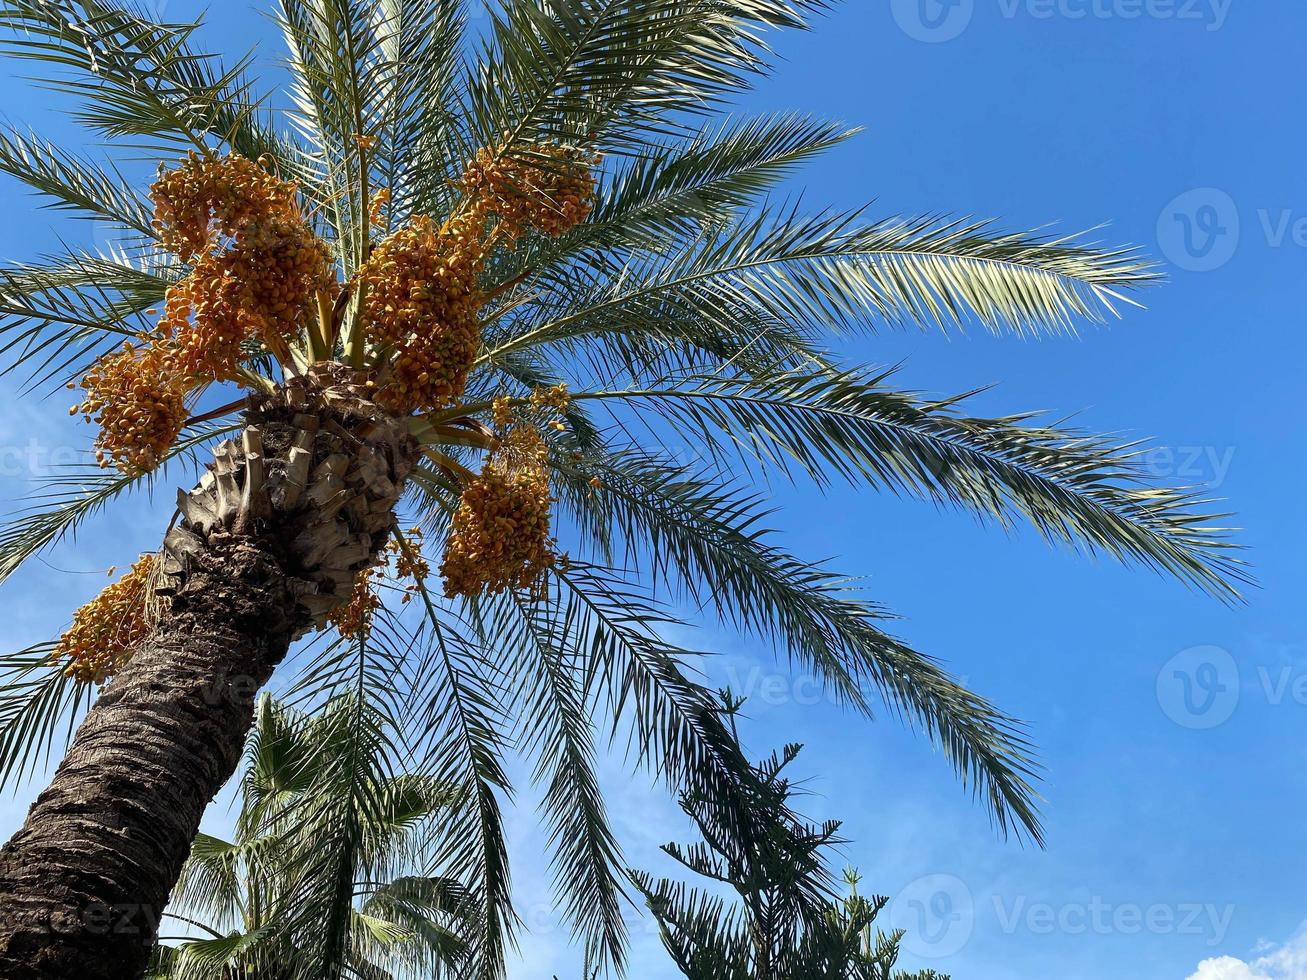 hermosas palmeras con hojas grandes, jugosas y esponjosas, verdes, contra el cielo azul en un cálido complejo turístico del sur del país tropical oriental. fondo trasero, textura foto